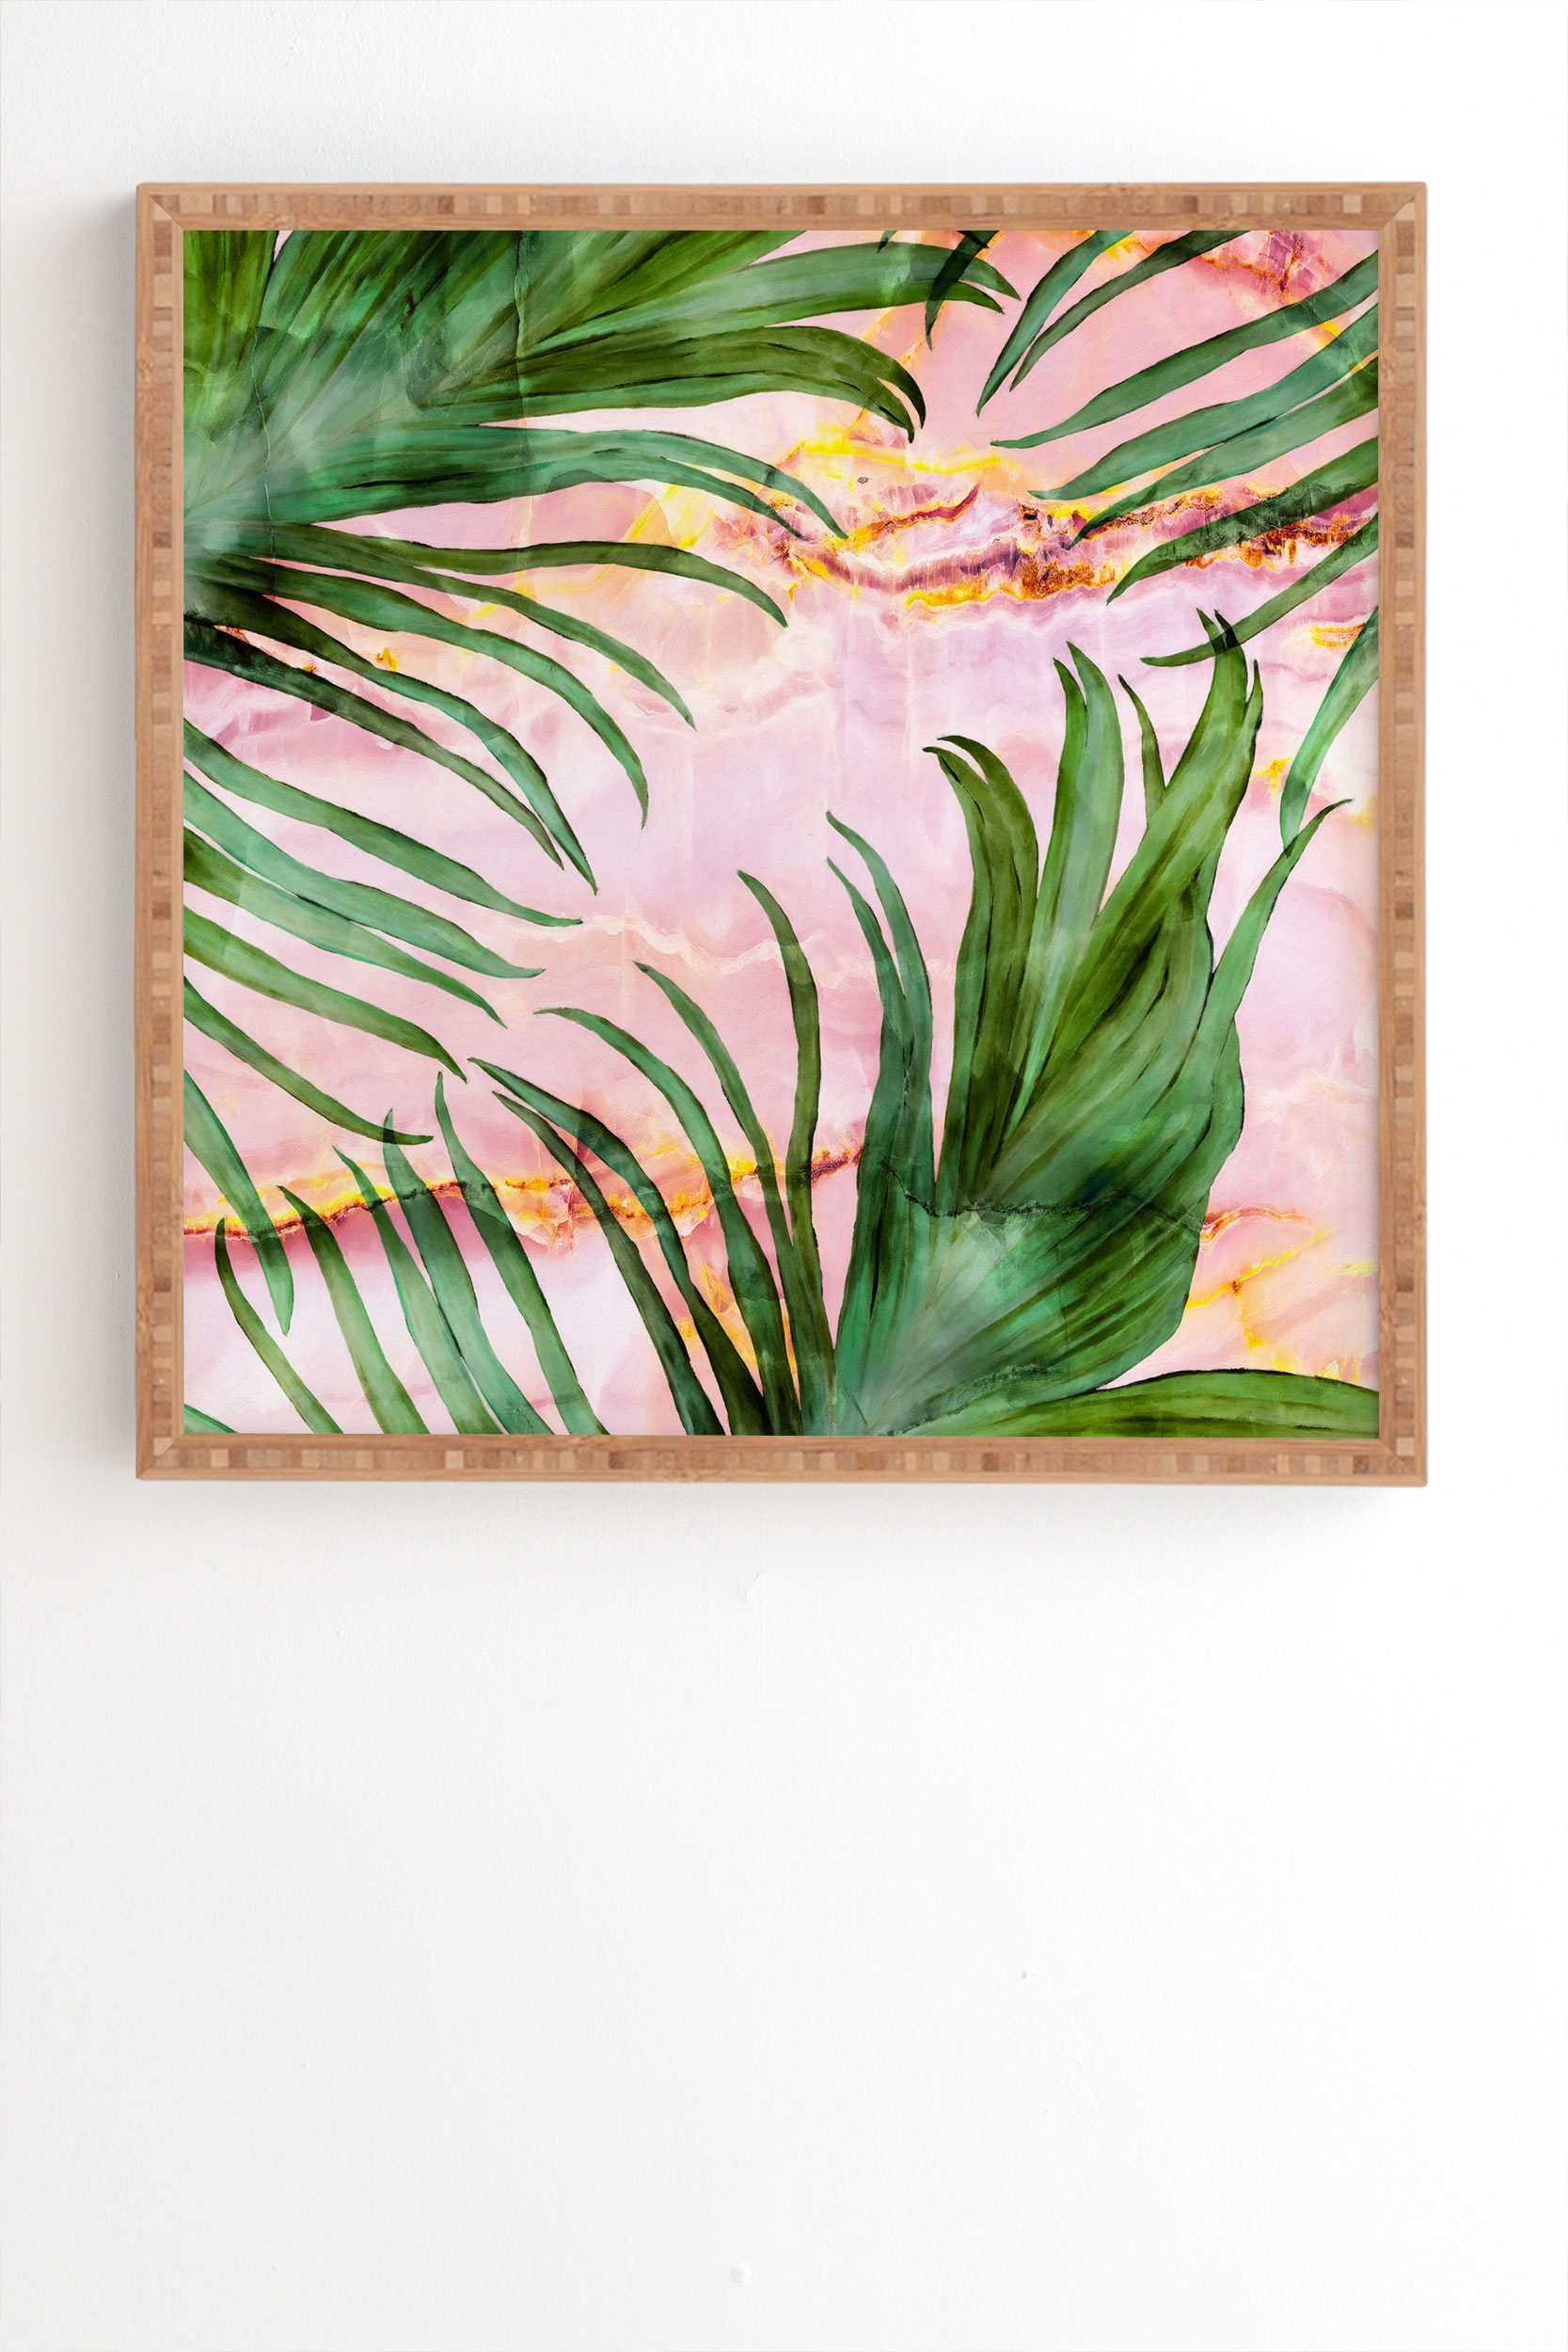 Palm Leaf On Marble 01 by Marta Barragan Camarasa - Framed Wall Art Bamboo 30" x 30" - Image 1